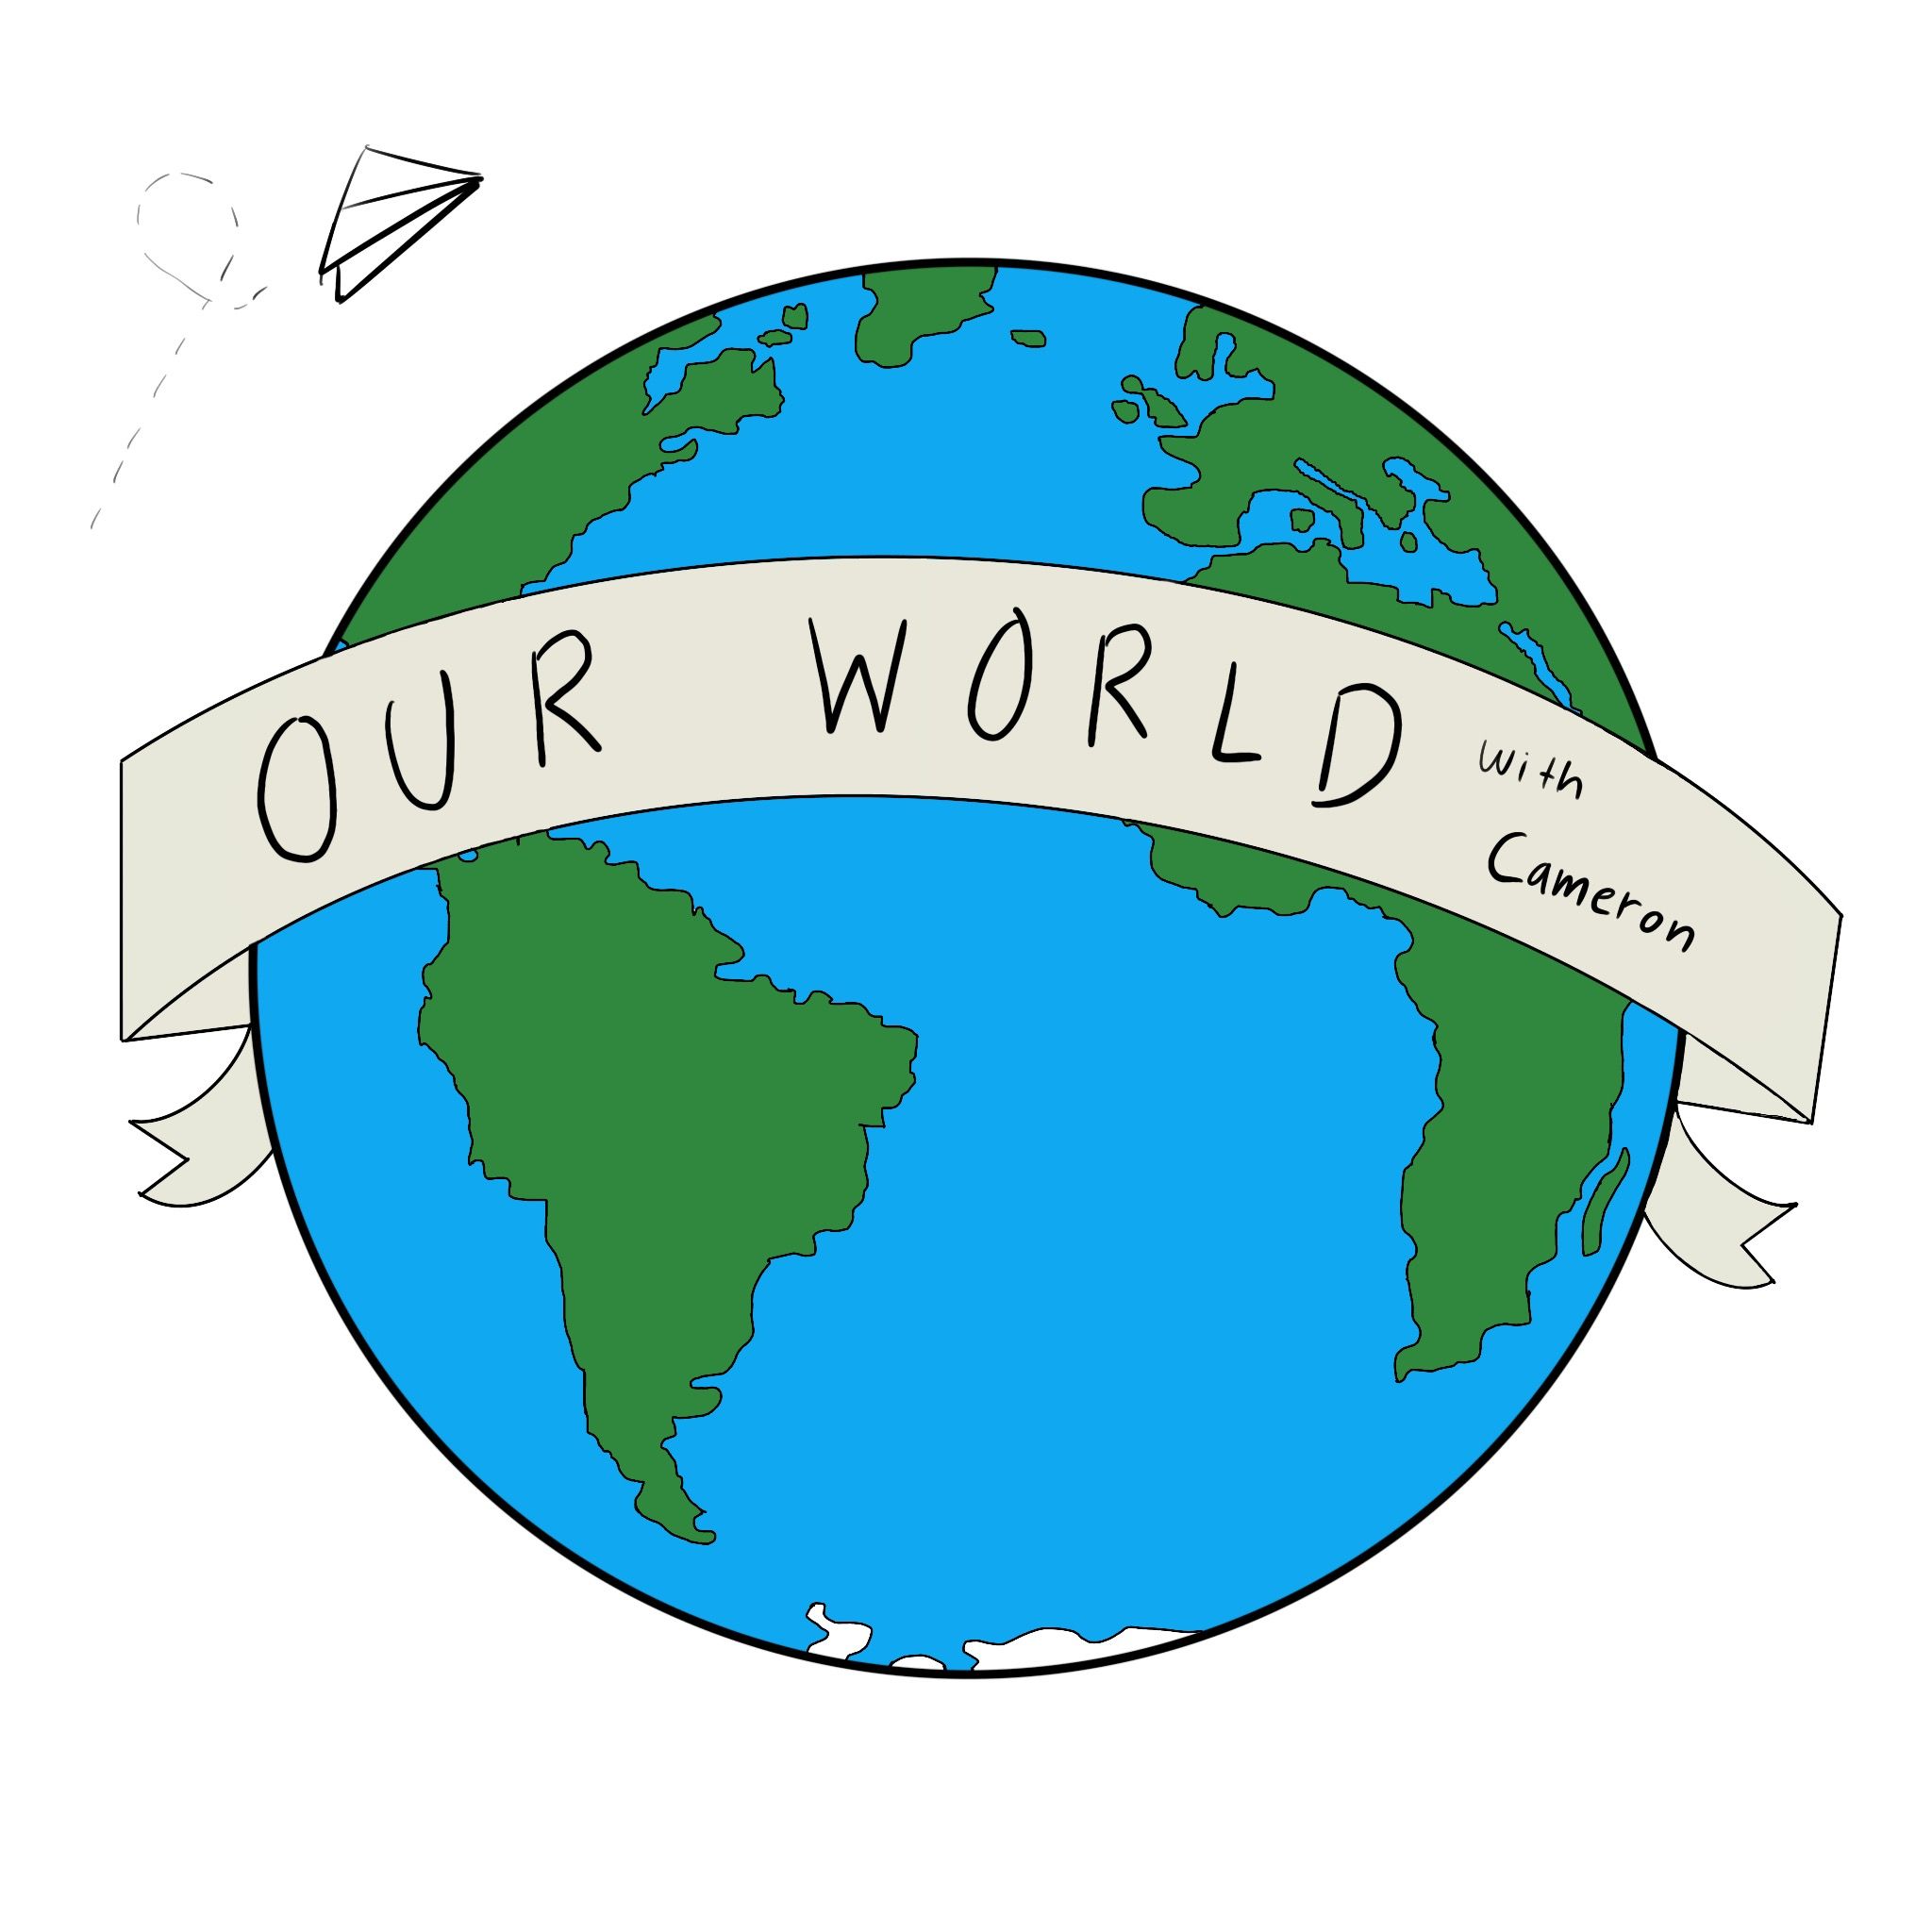 Our World with Cameron DJ show logo 2022